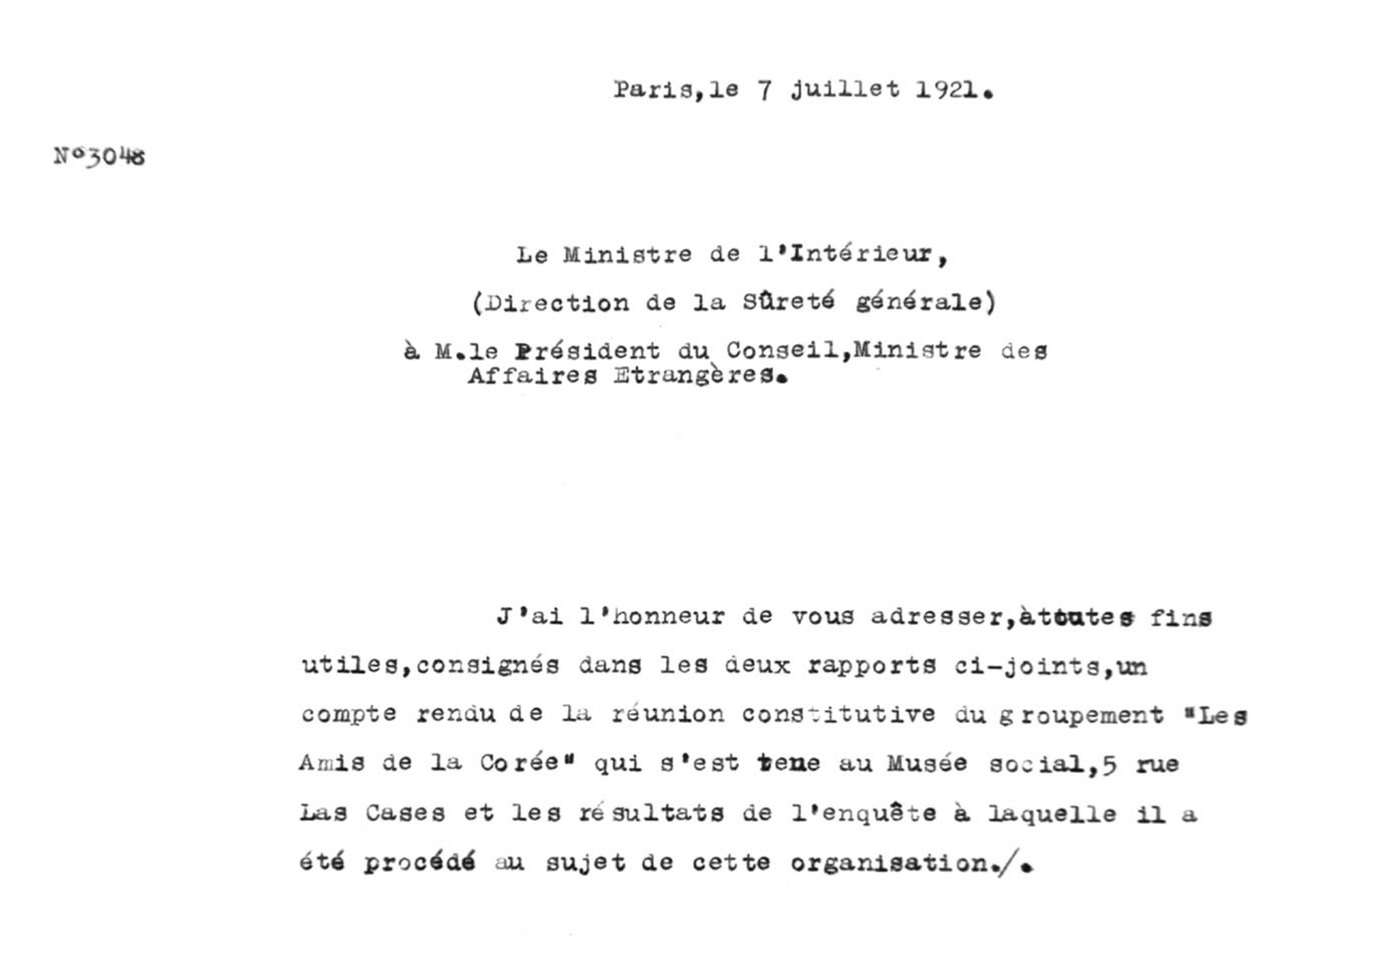 한국친우회 결성을 위한 회합에 대한 보고(1921), 프랑스 경찰의 정보 보고서로 라 카즈가(rue Las Cases) 5번지 사회 박물관(Musée social)에서 회합이 있었음을 보고하고 있다.